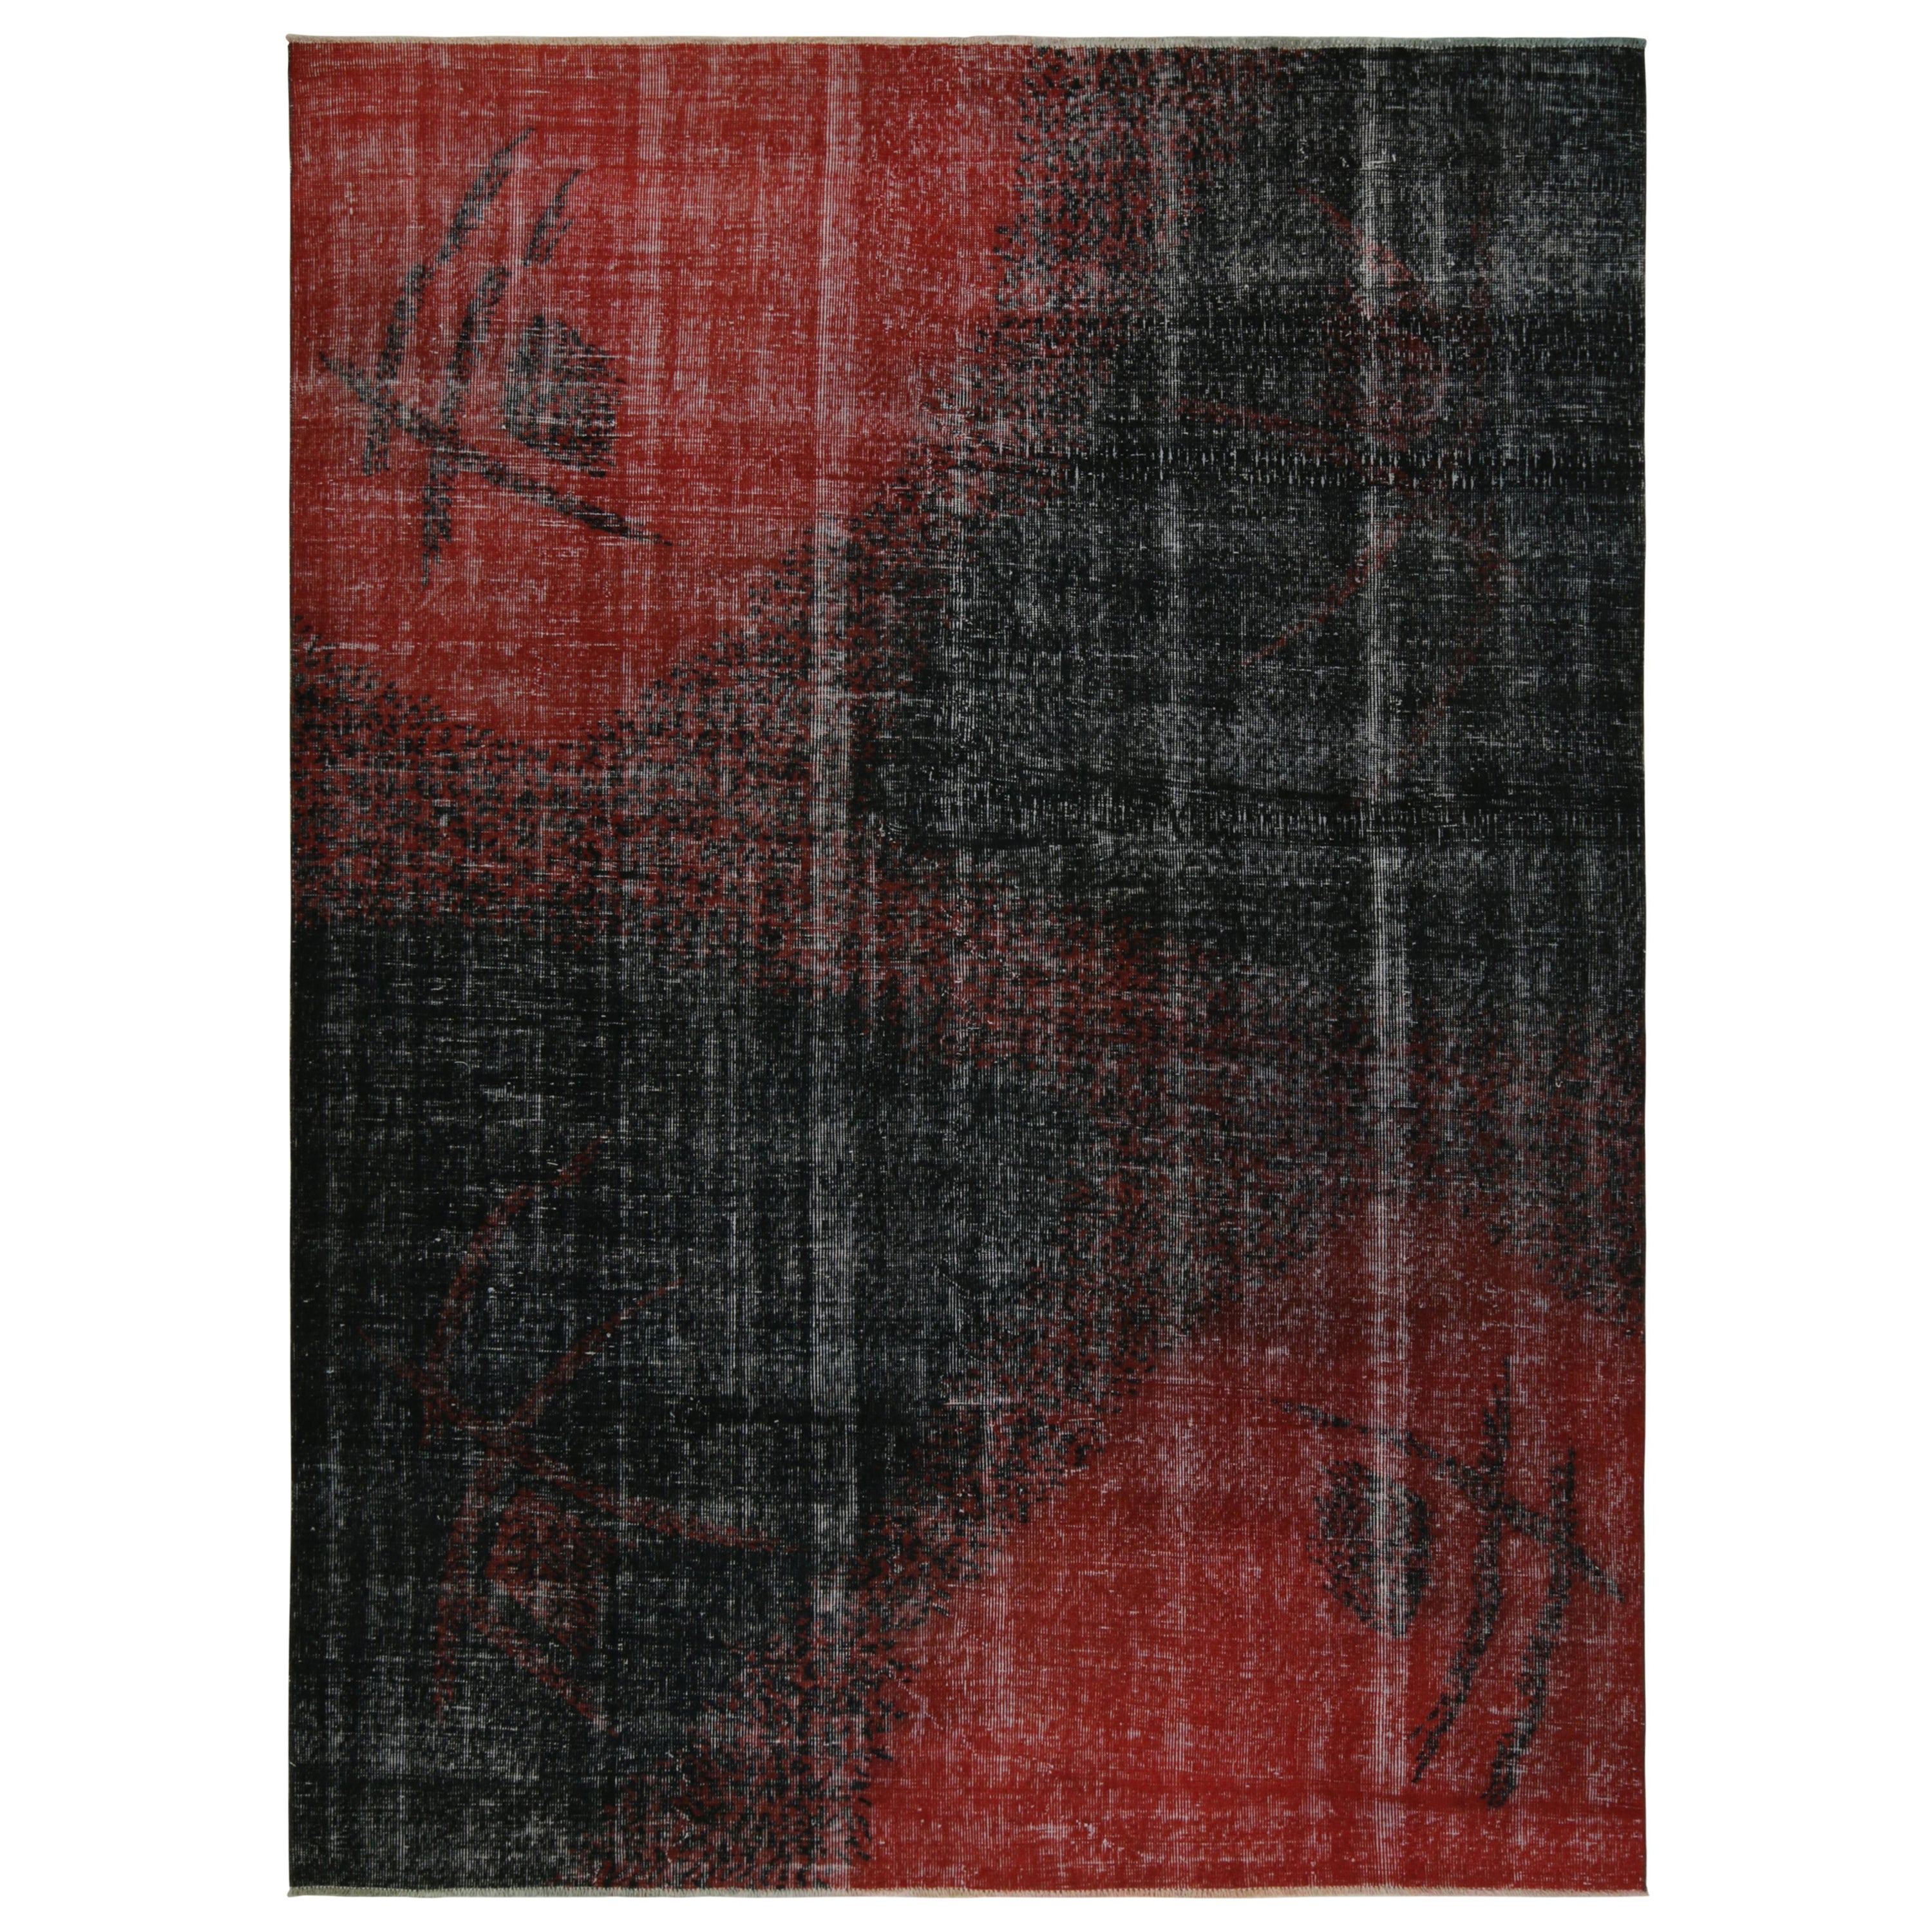 Vintage Distressed Zeki Müren Rug in Red and Black Deco Pattern, by Rug & Kilim